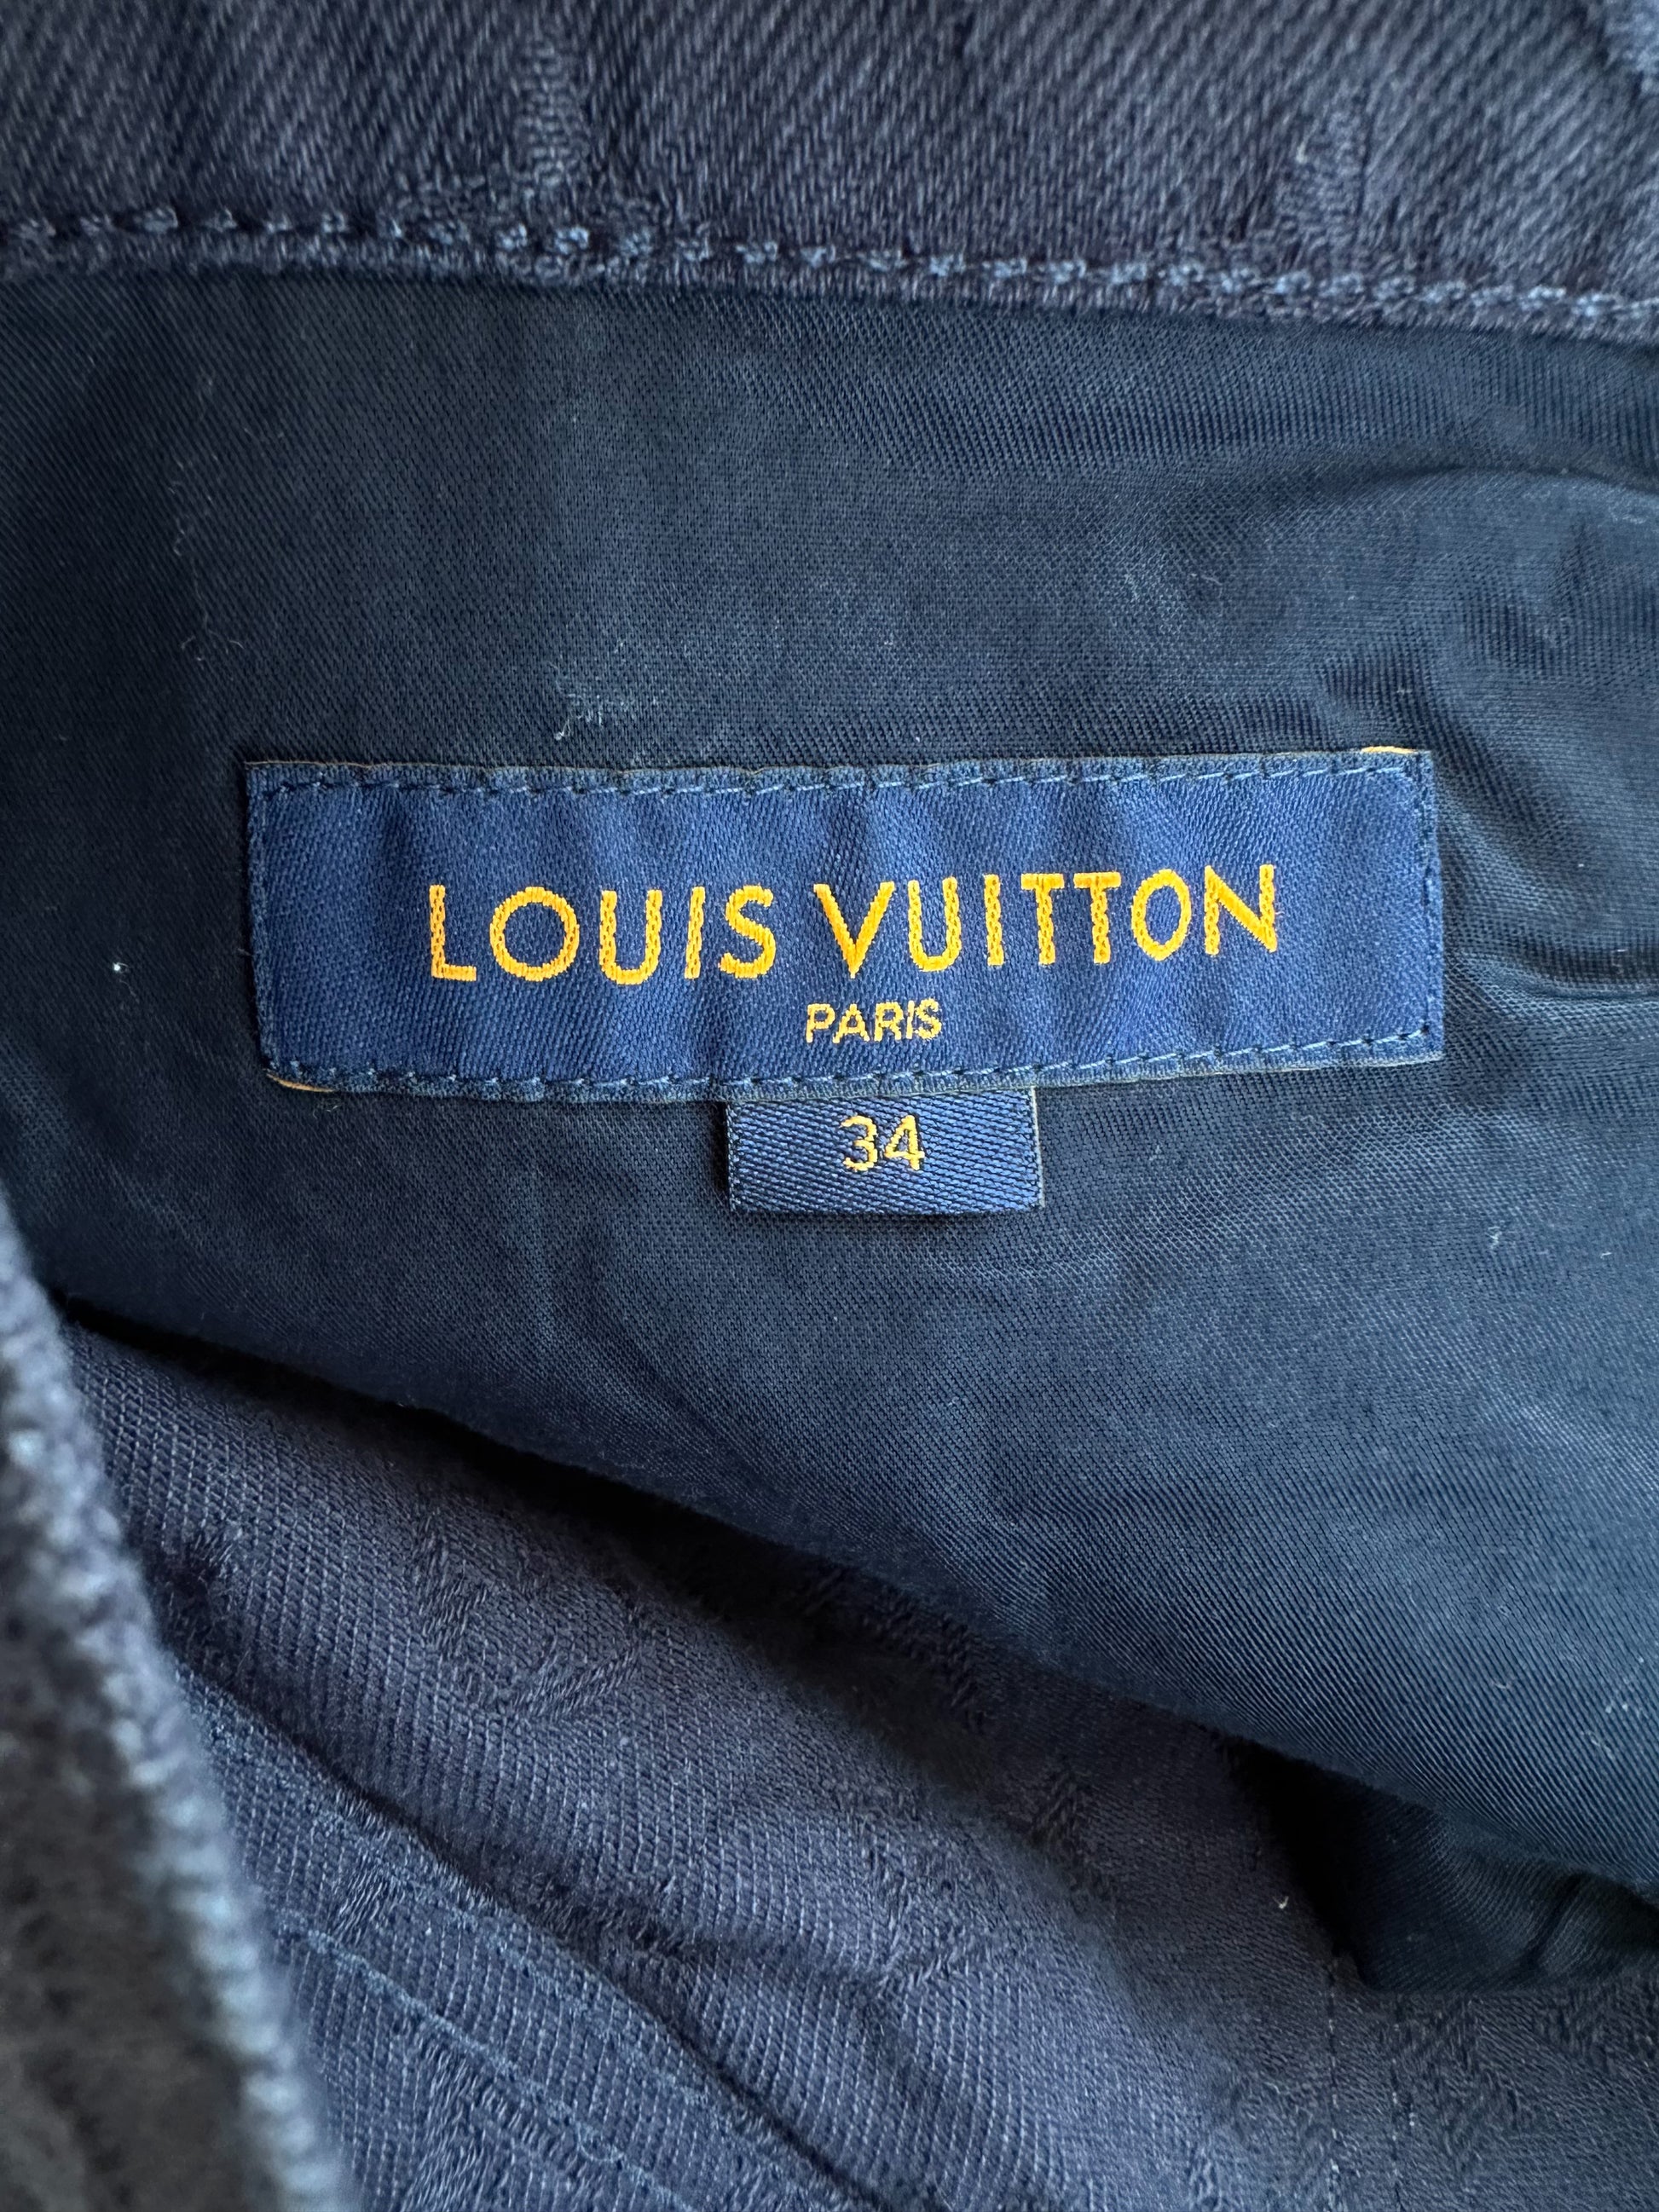 Louis Vuitton, Jeans, Louis Vuitton Mens Jeans 34 Waist